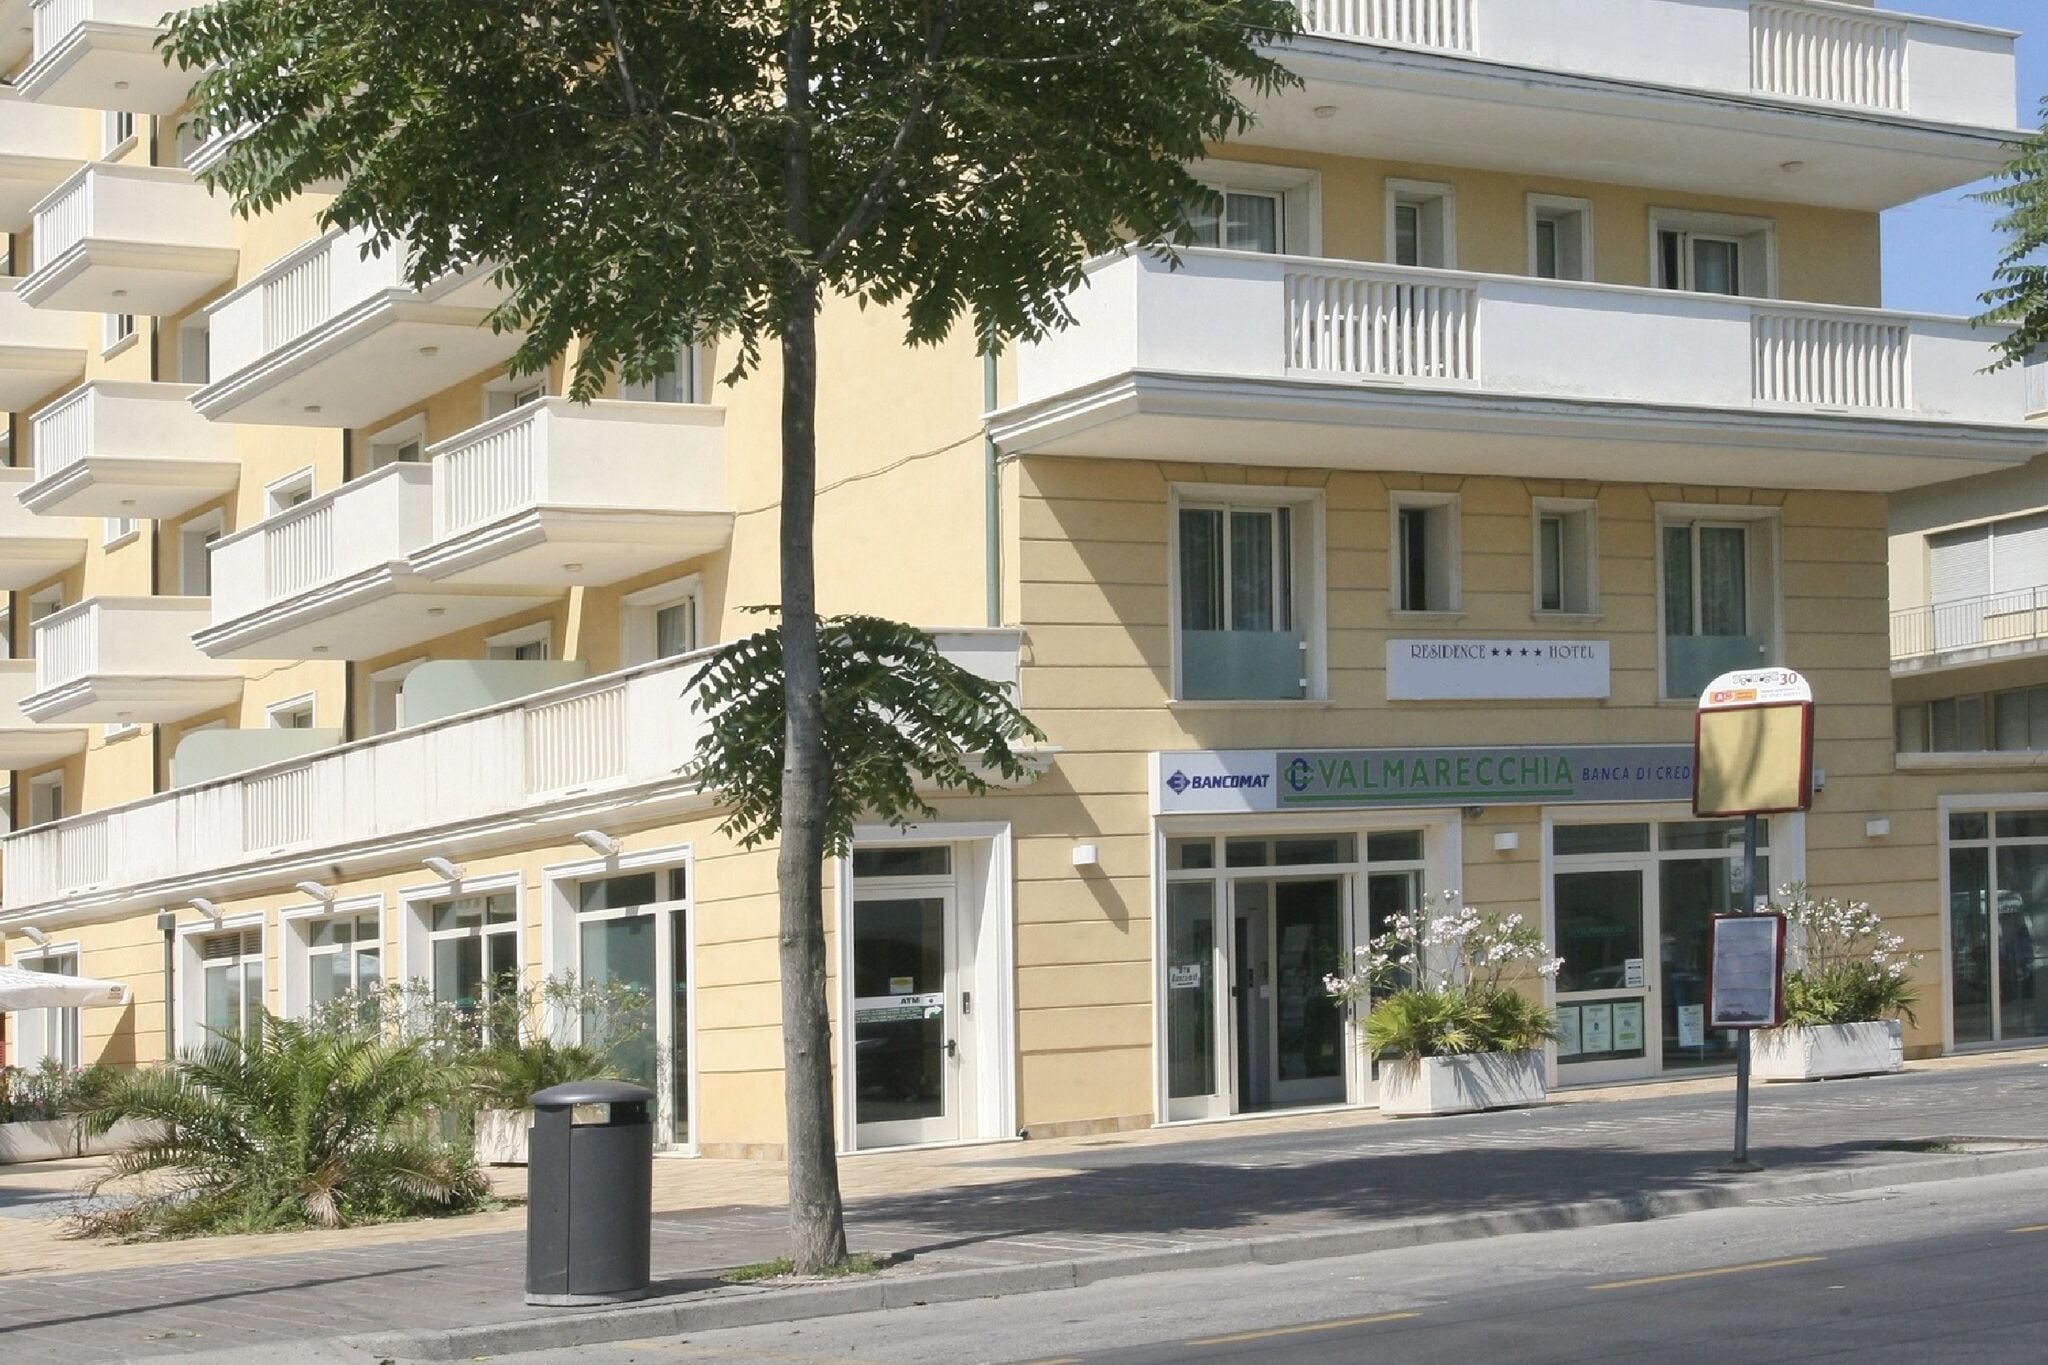 2-Personen-Ferienwohnung in Rimini mit Balkon, in Strandnähe